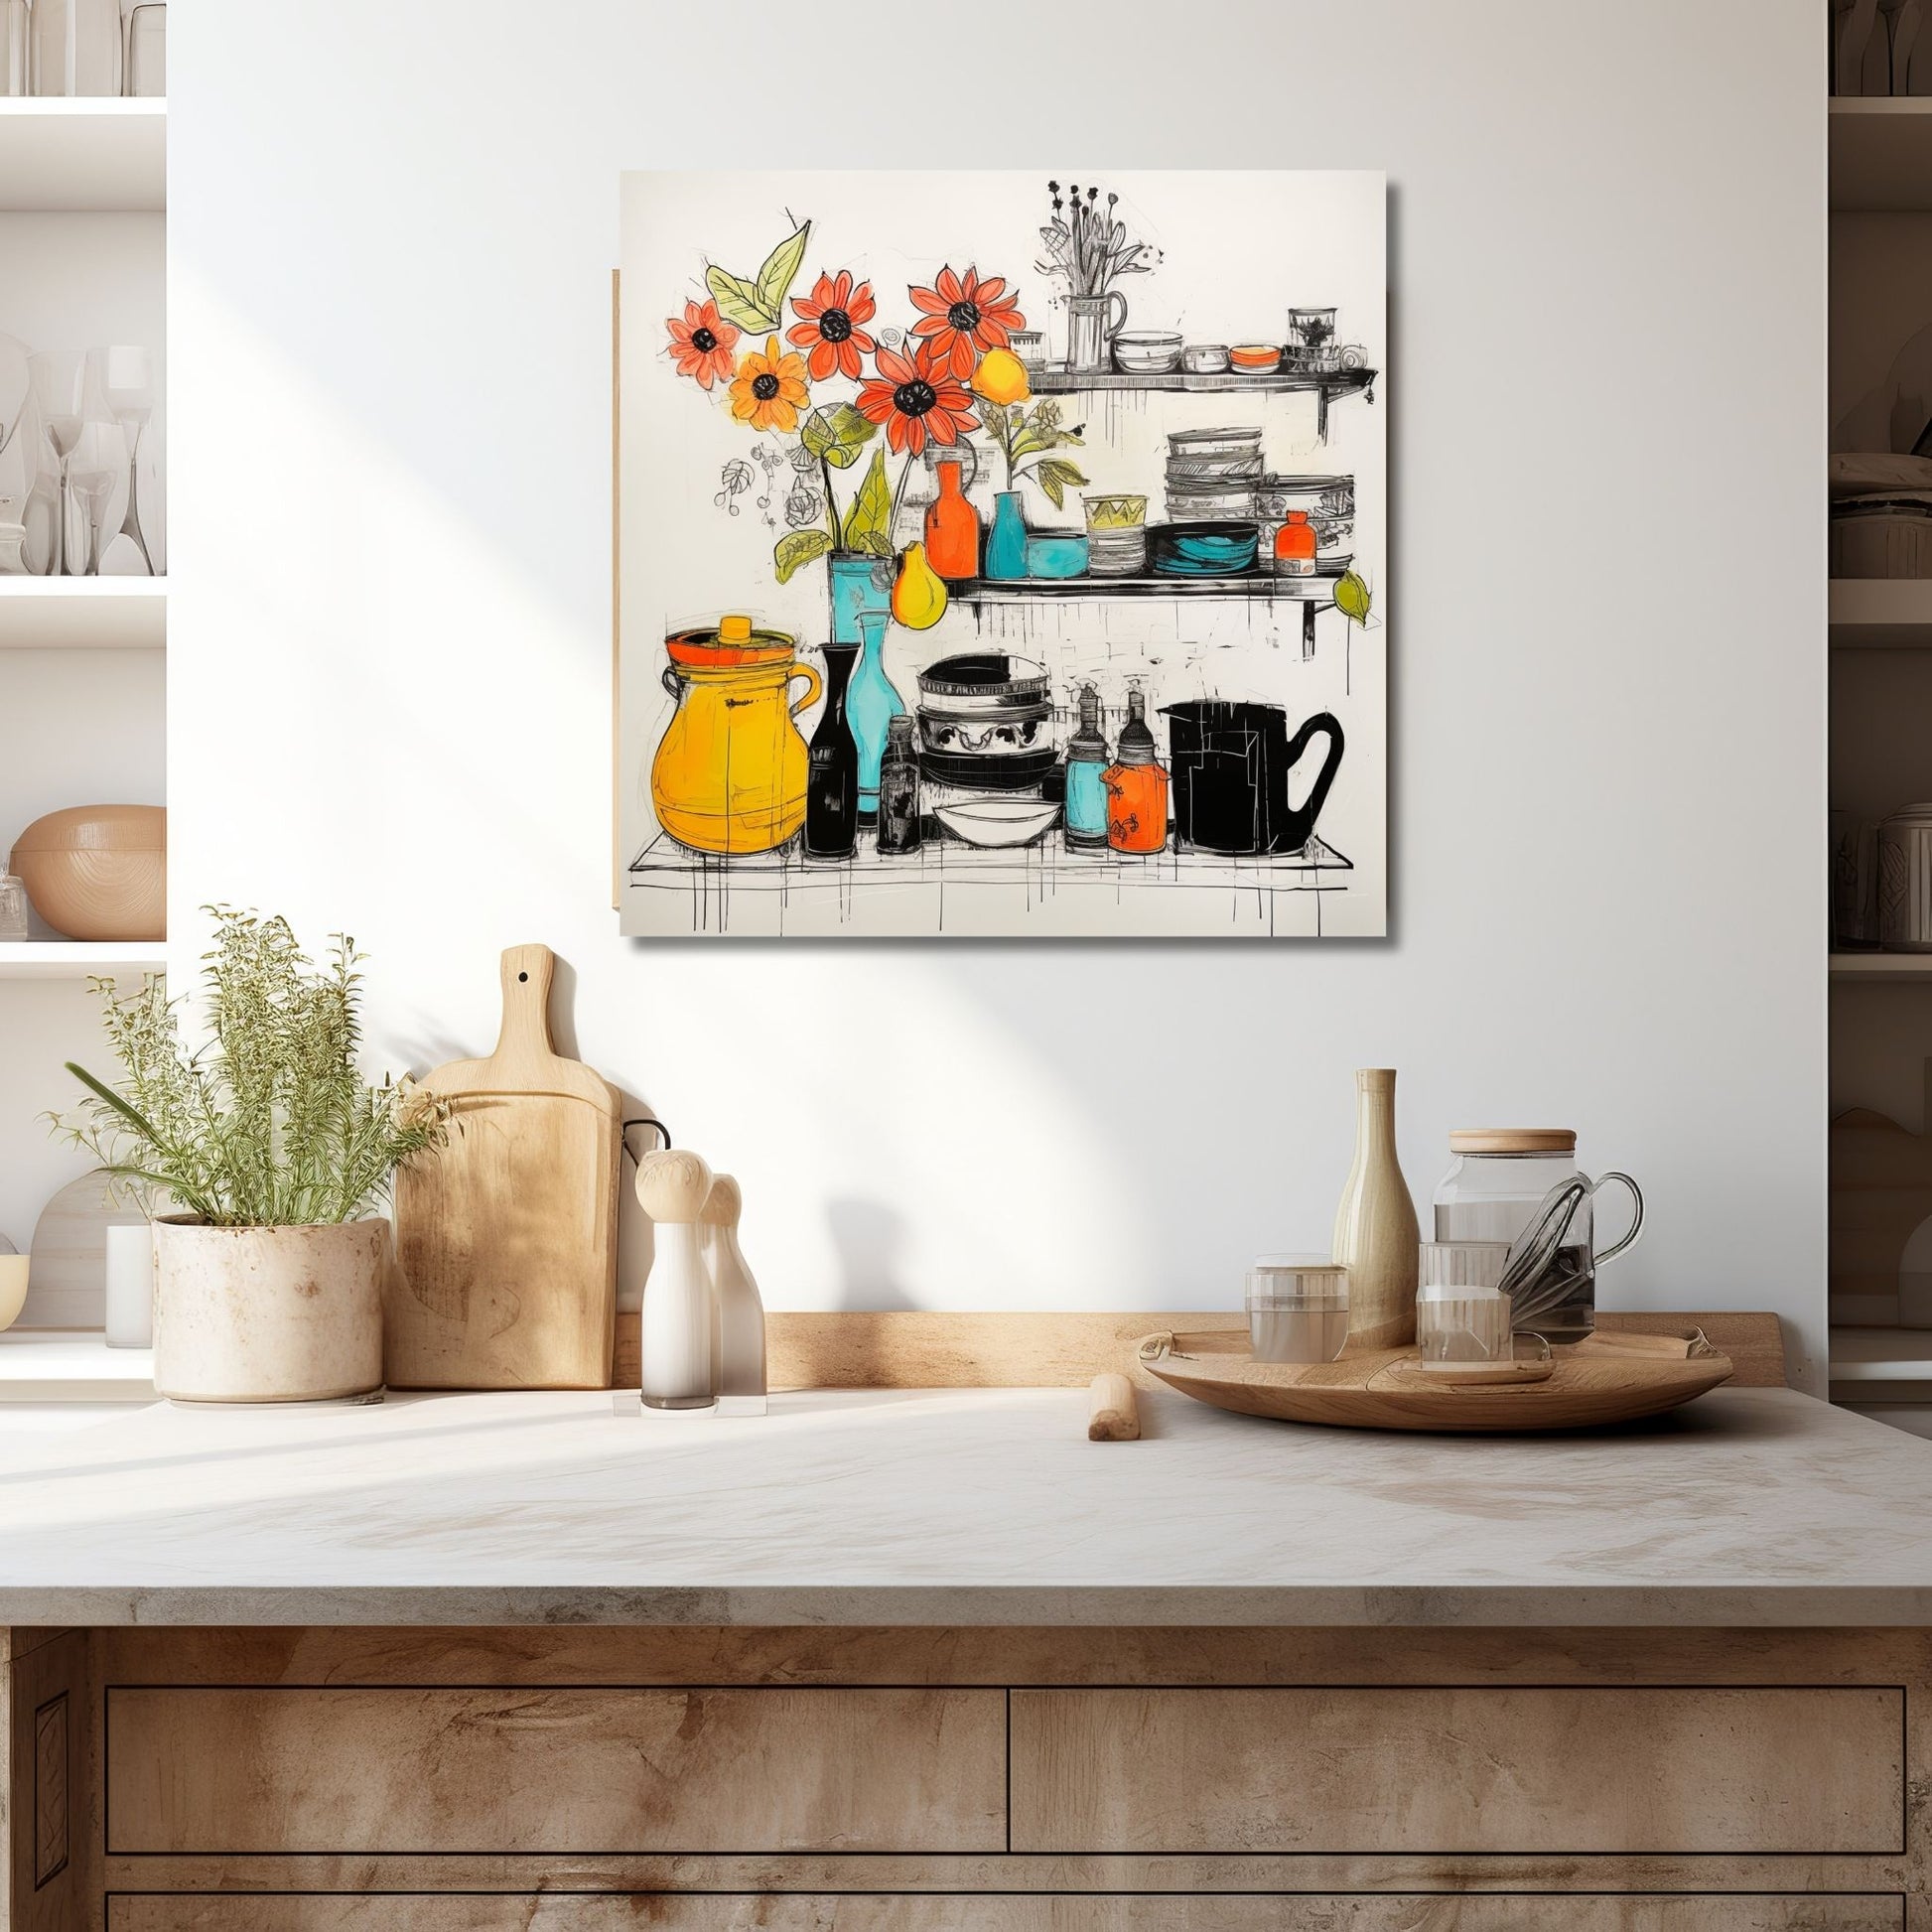 Grafisk illustrasjon som fanger essensen av et innbydende kjøkken, komplett med et fargerikt utvalg av vaser, skåler og en hylle fylt med vakre blomster. Illustrasjonen viser motivet på lerret som henger over en kjøkkenbenk.